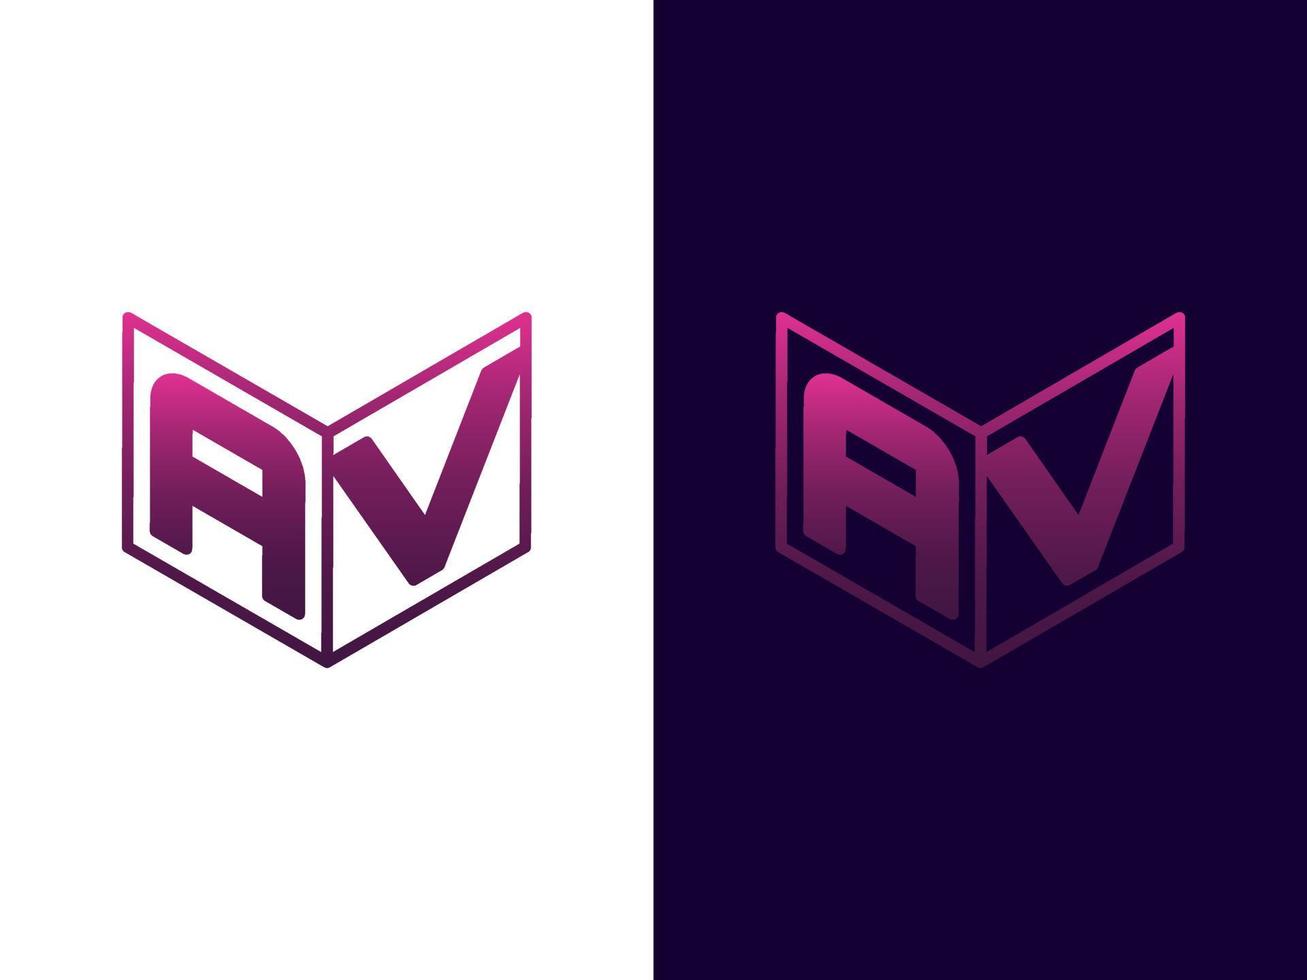 Initial letter AV minimalist and modern 3D logo design vector